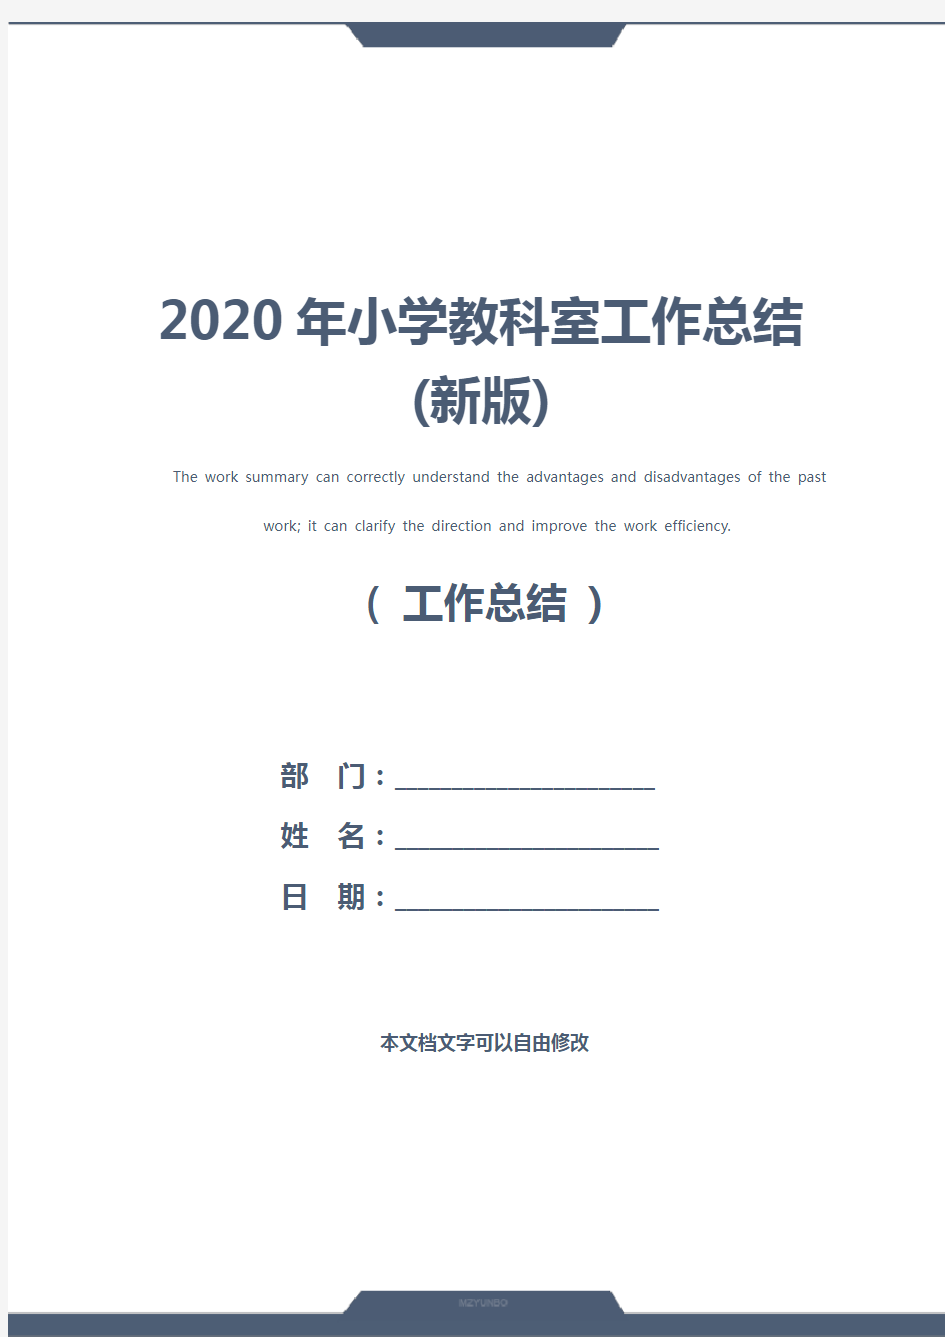 2020年小学教科室工作总结(新版)